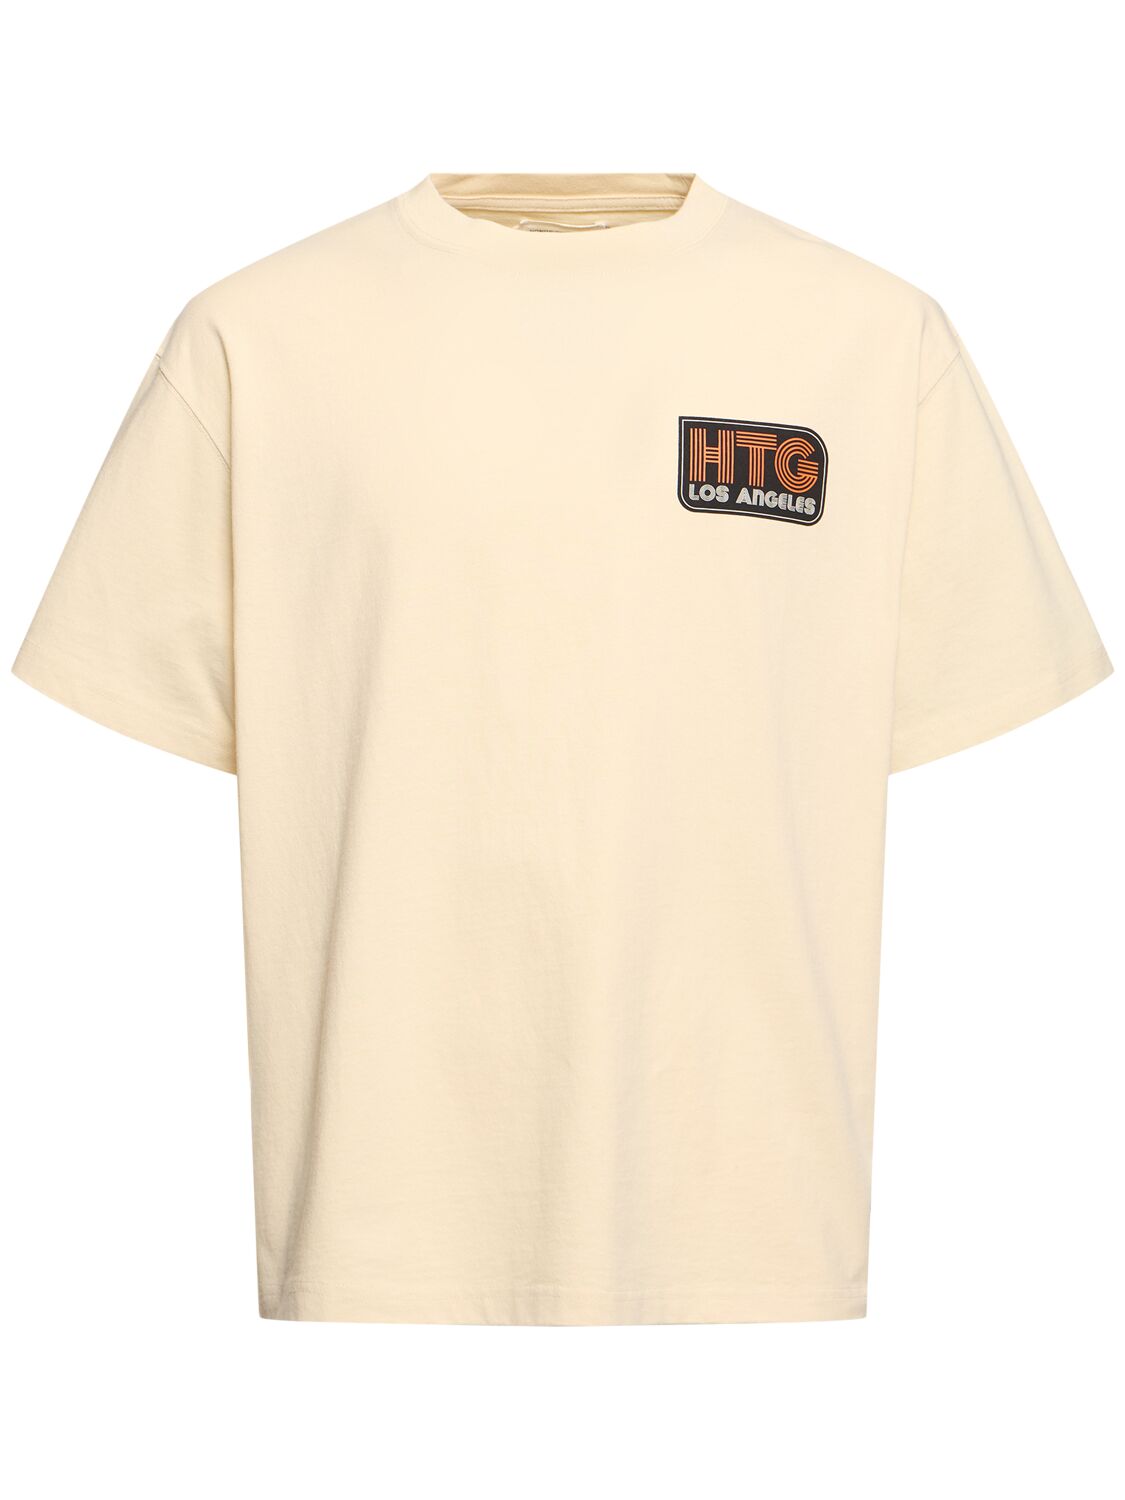 Htg Los Angeles Short Sleeve T-shirt